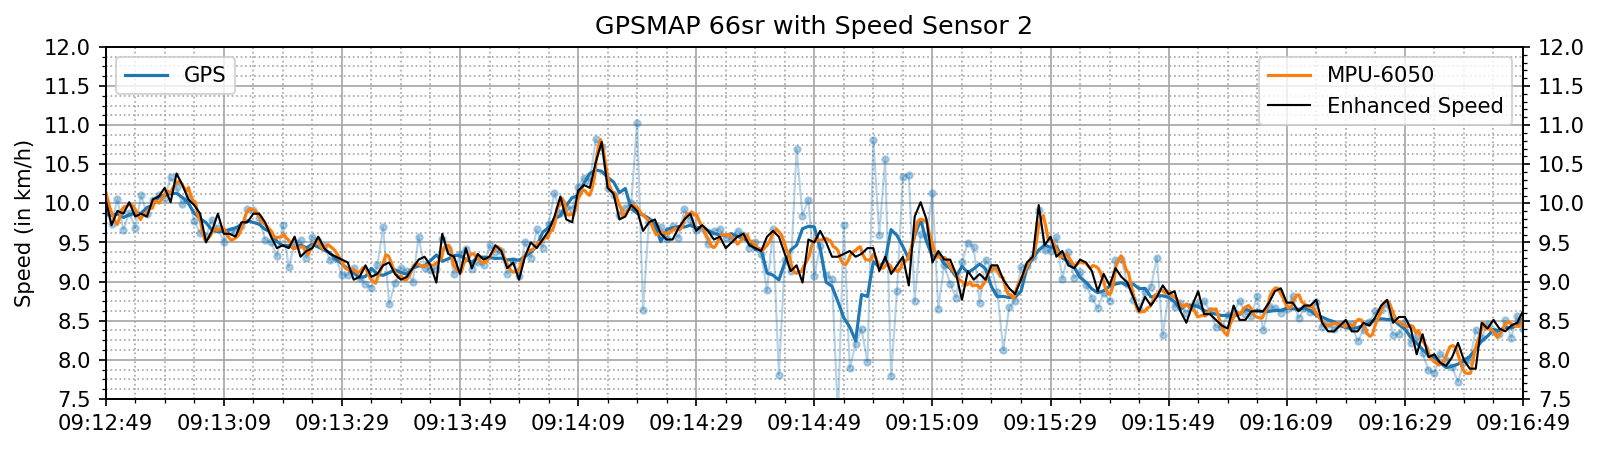 enhanced_speed_spd_ascent.png